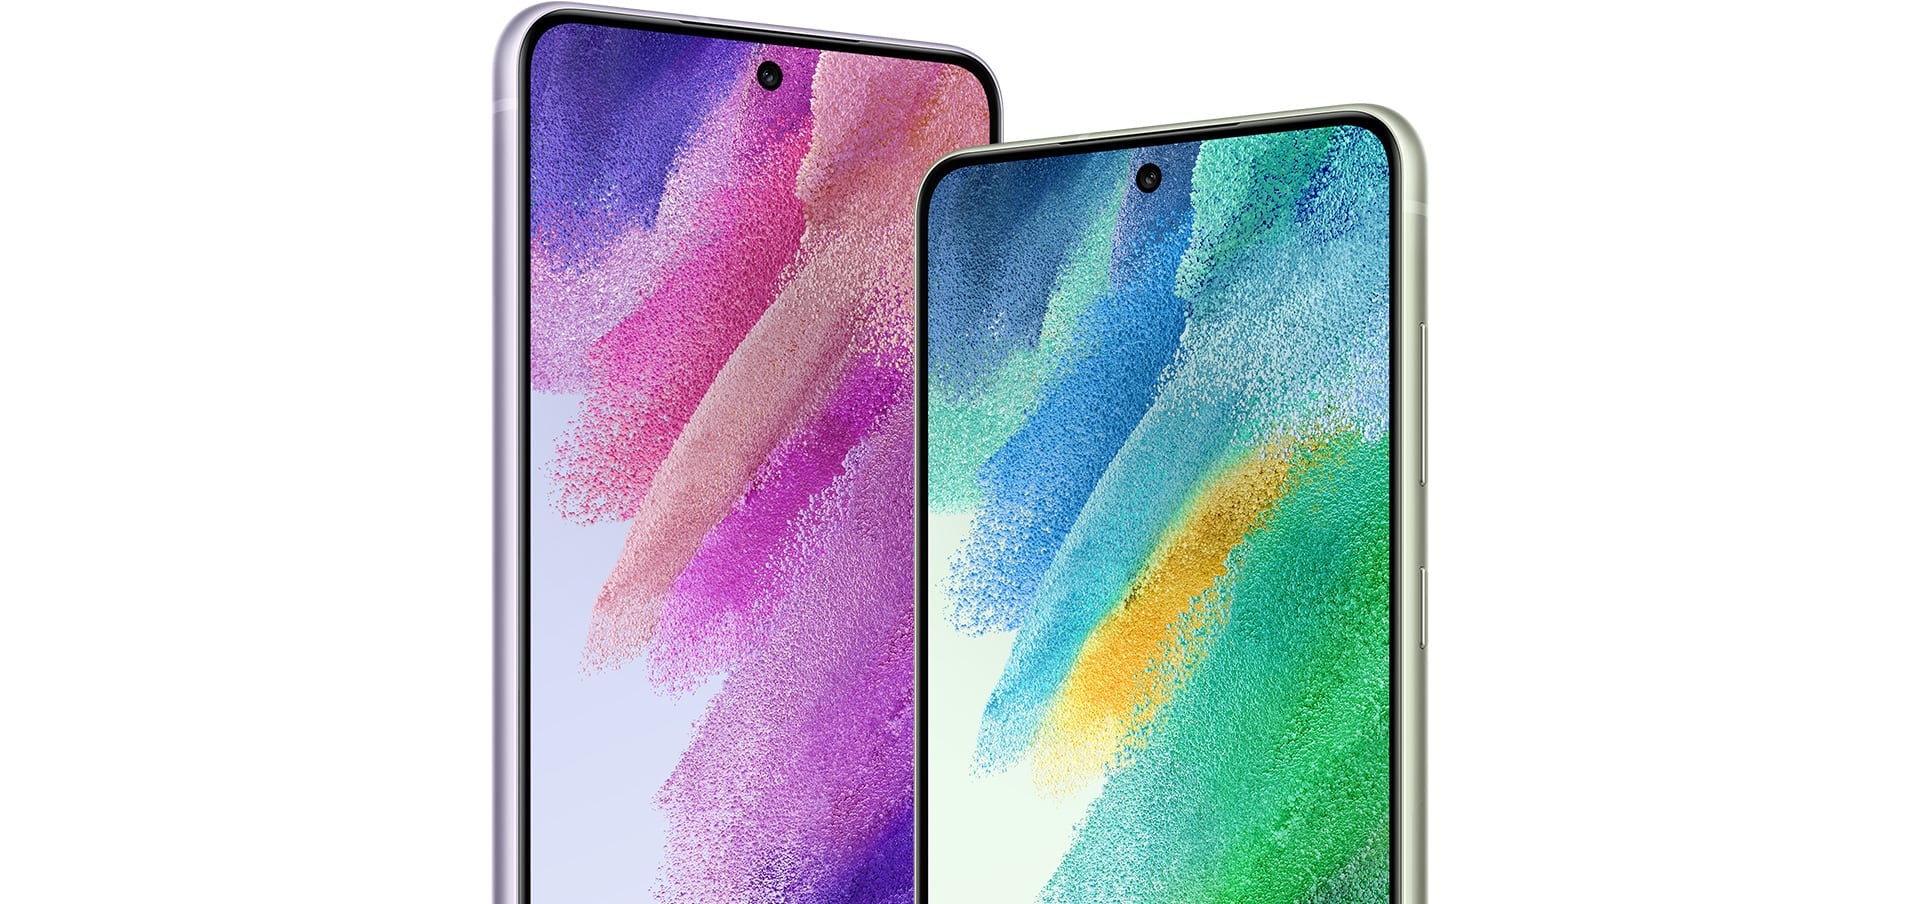 هاتفان Galaxy S21 FE 5G معروضان بجانب بعضهما البعض، حيث يمكن رؤيتهما من الأمام، فيظهر على شاشة أحدهما صورة خلفية رسومية بلون زهري وأرجواني وعلى الآخر صورة رسومية بلون أخضر وأزرق.